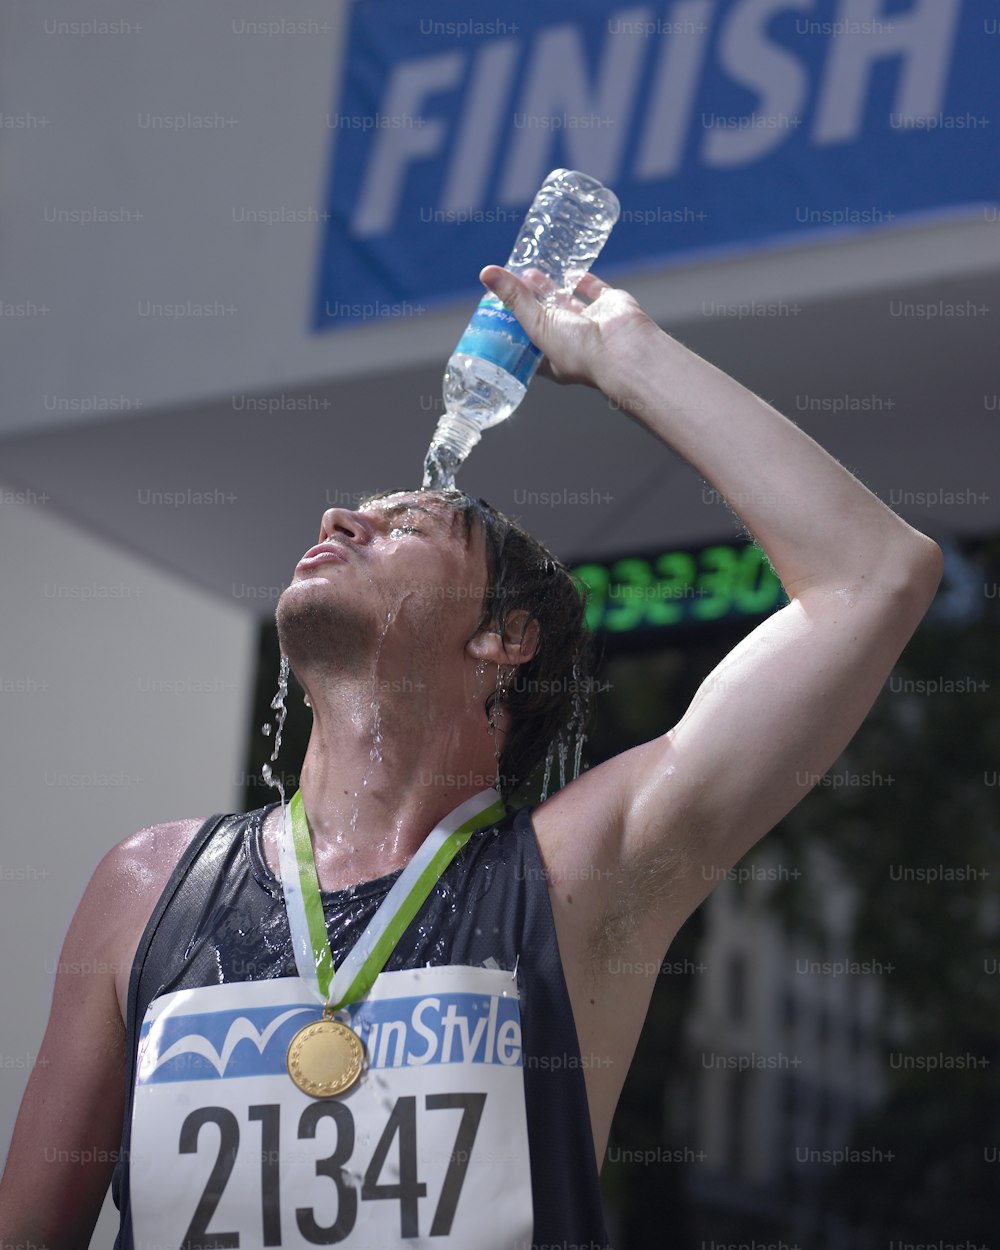 Un homme buvant de l’eau dans une bouteille d’eau